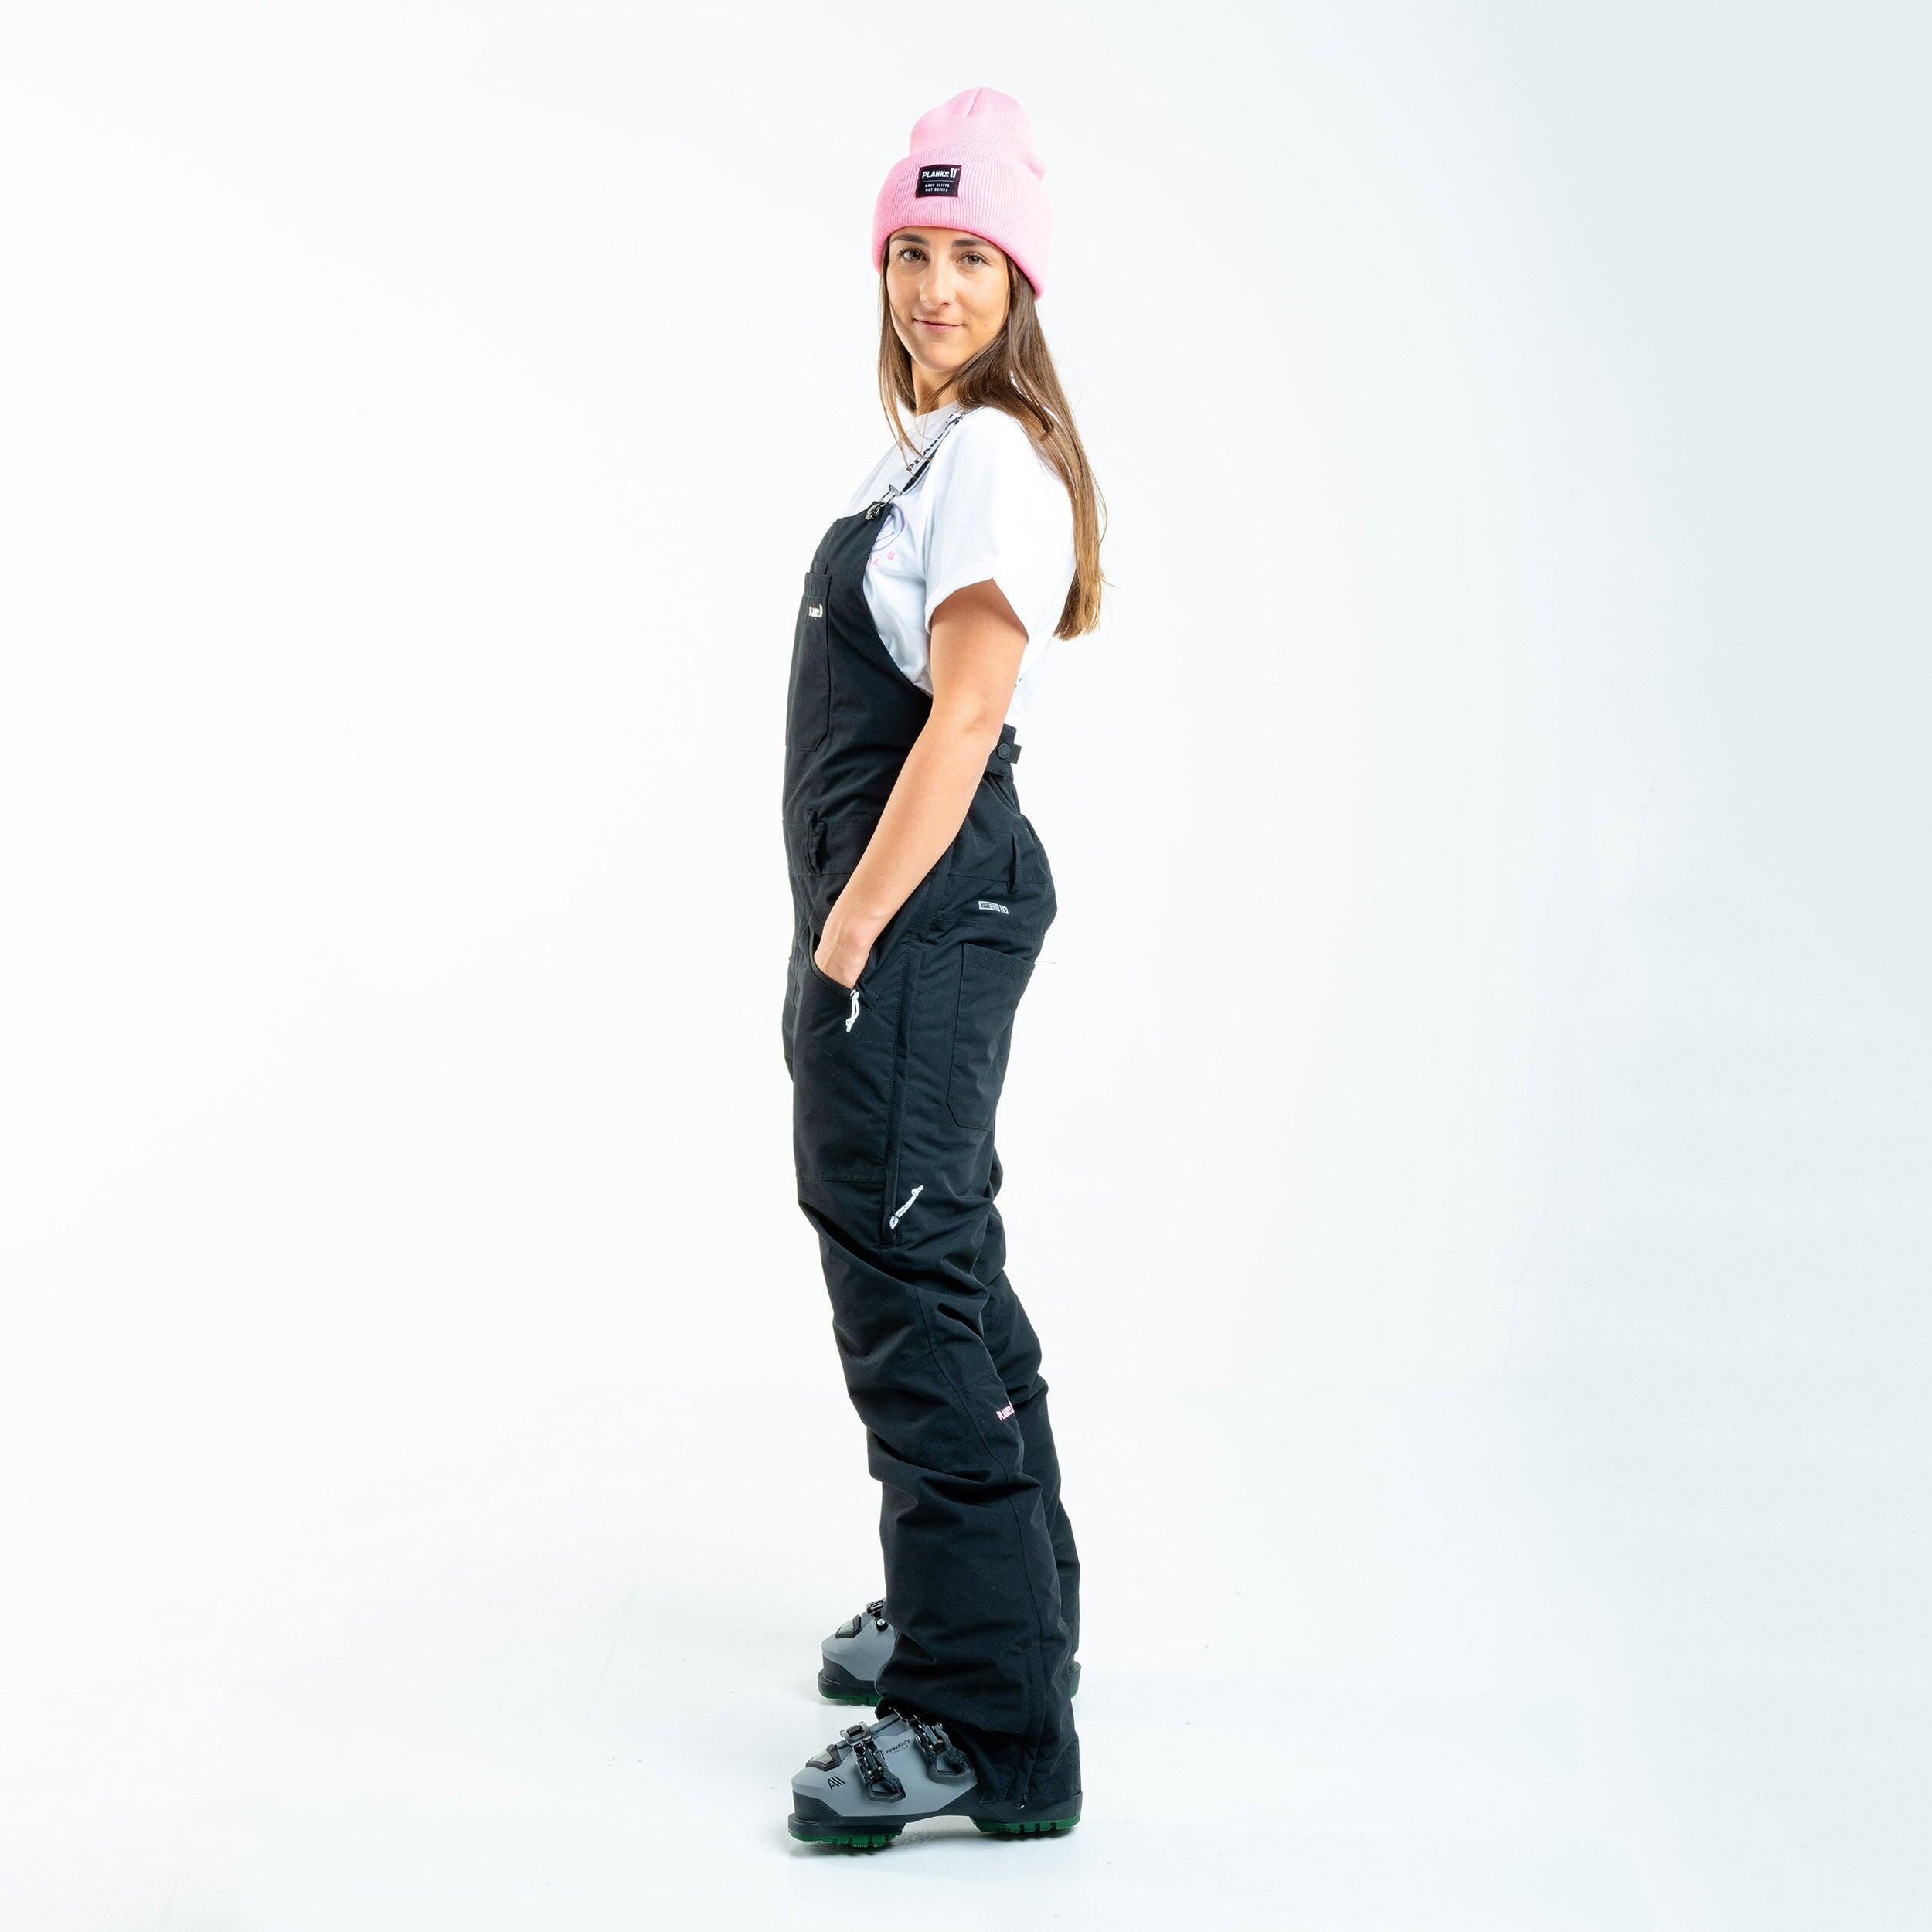 Planks Fun-Garees Women's Snowboard Bib Pants in Black Slim Fit Ski Jumpsuit 4/6